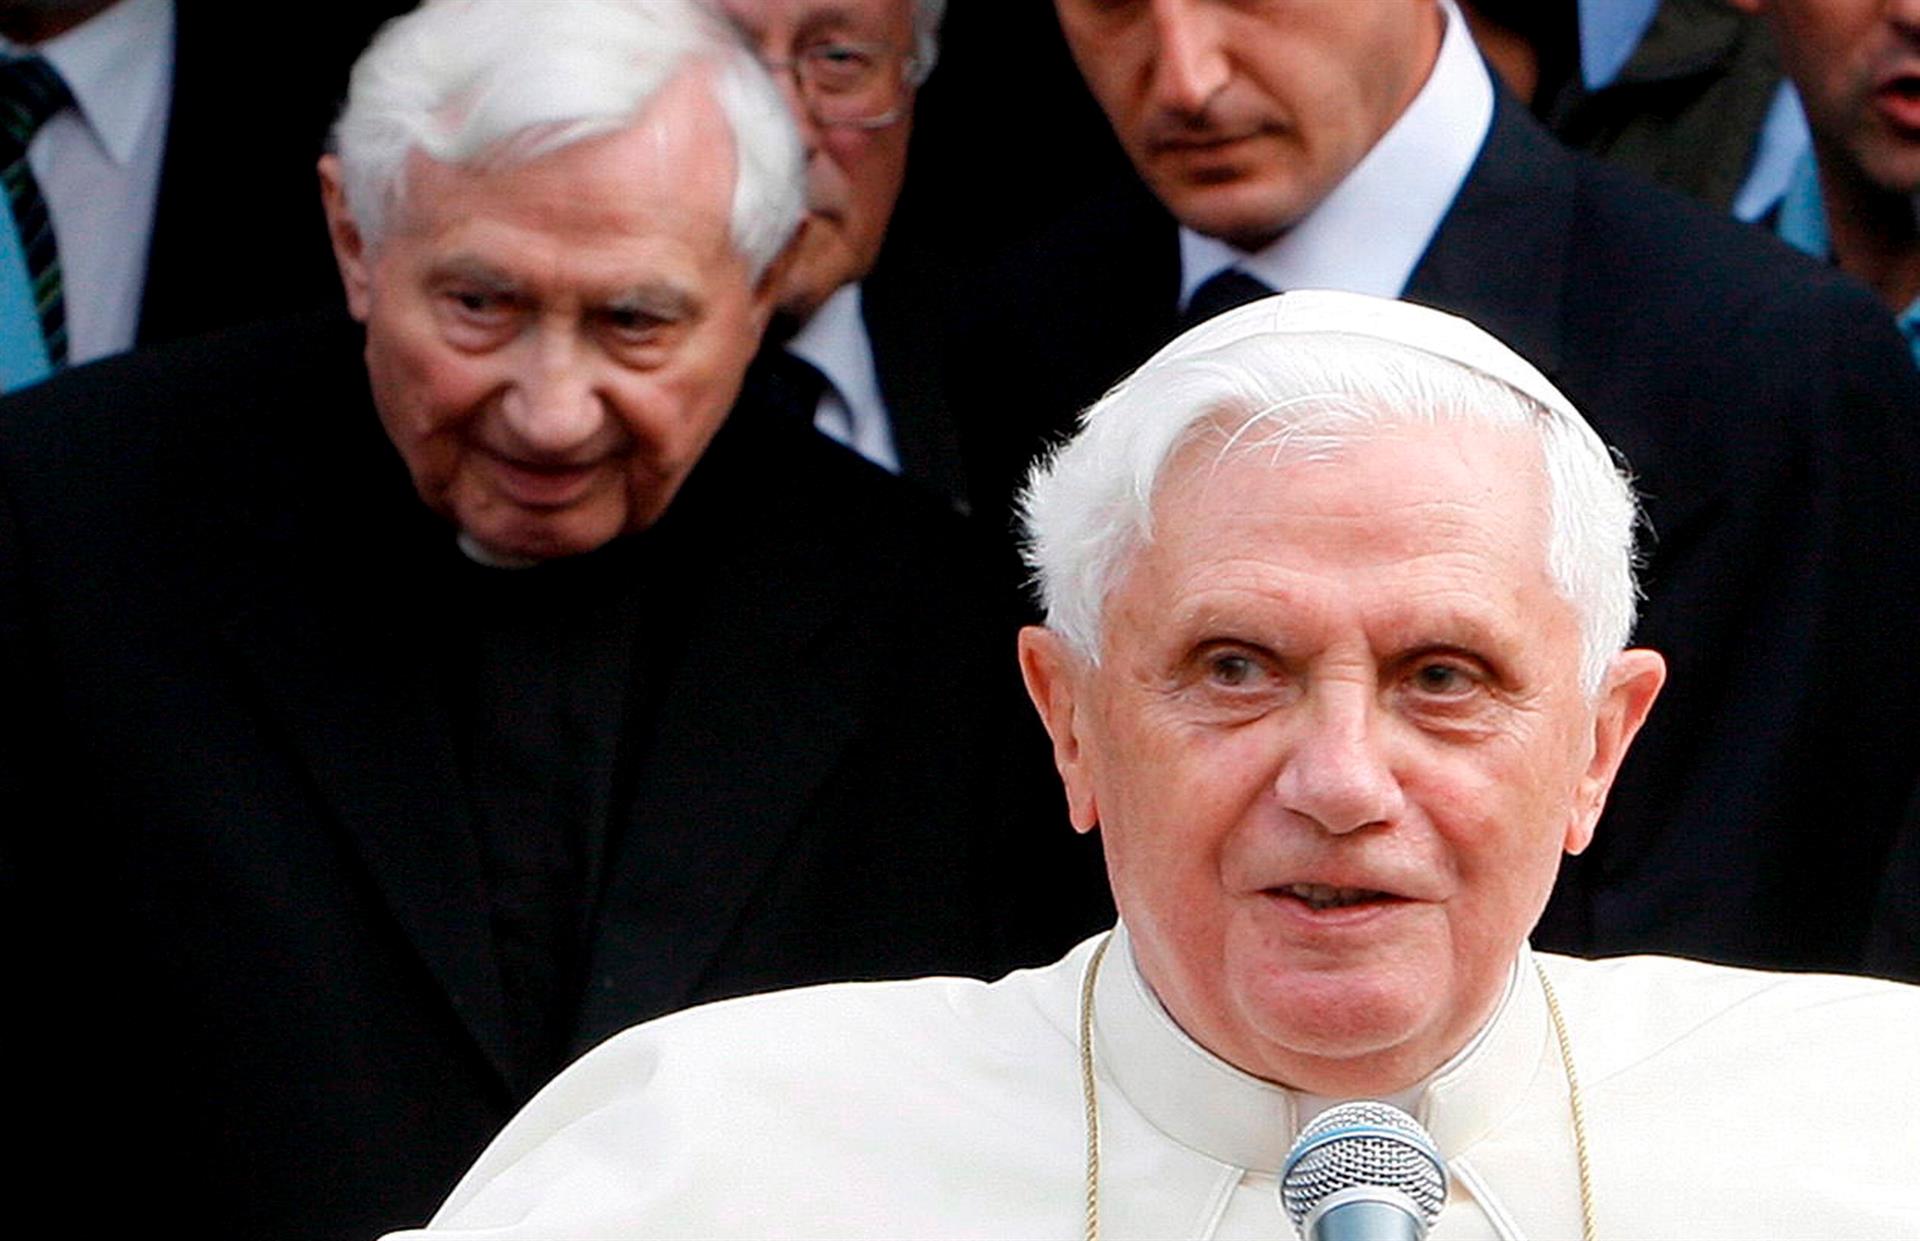 El Vaticano afirma que Ratzinger condenó los abusos y se reunió con víctimas